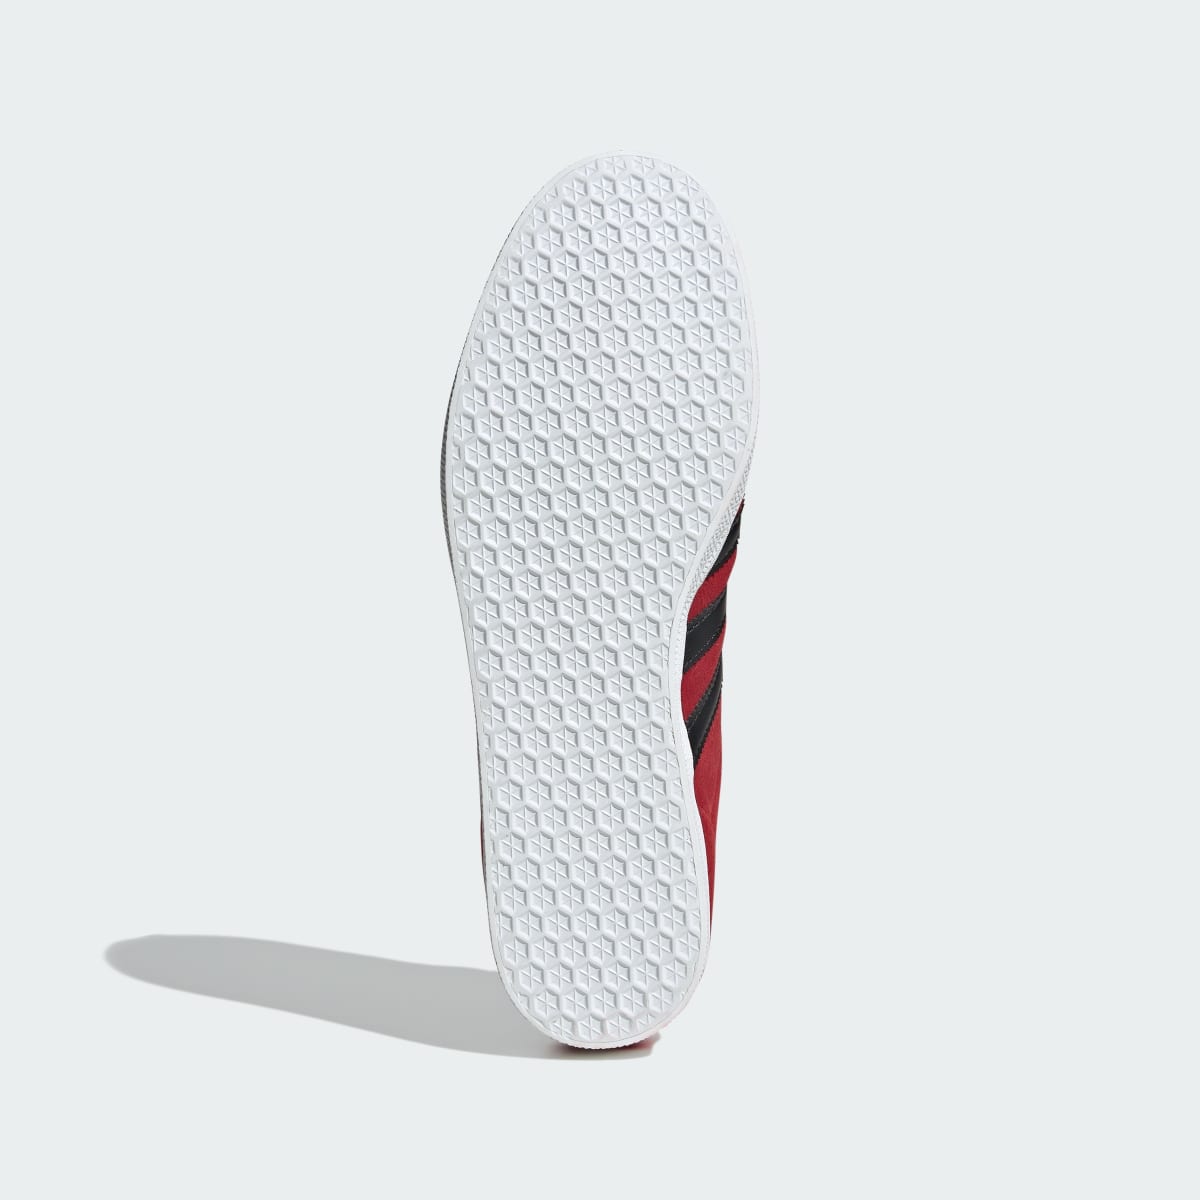 Adidas Gazelle Shoes. 4